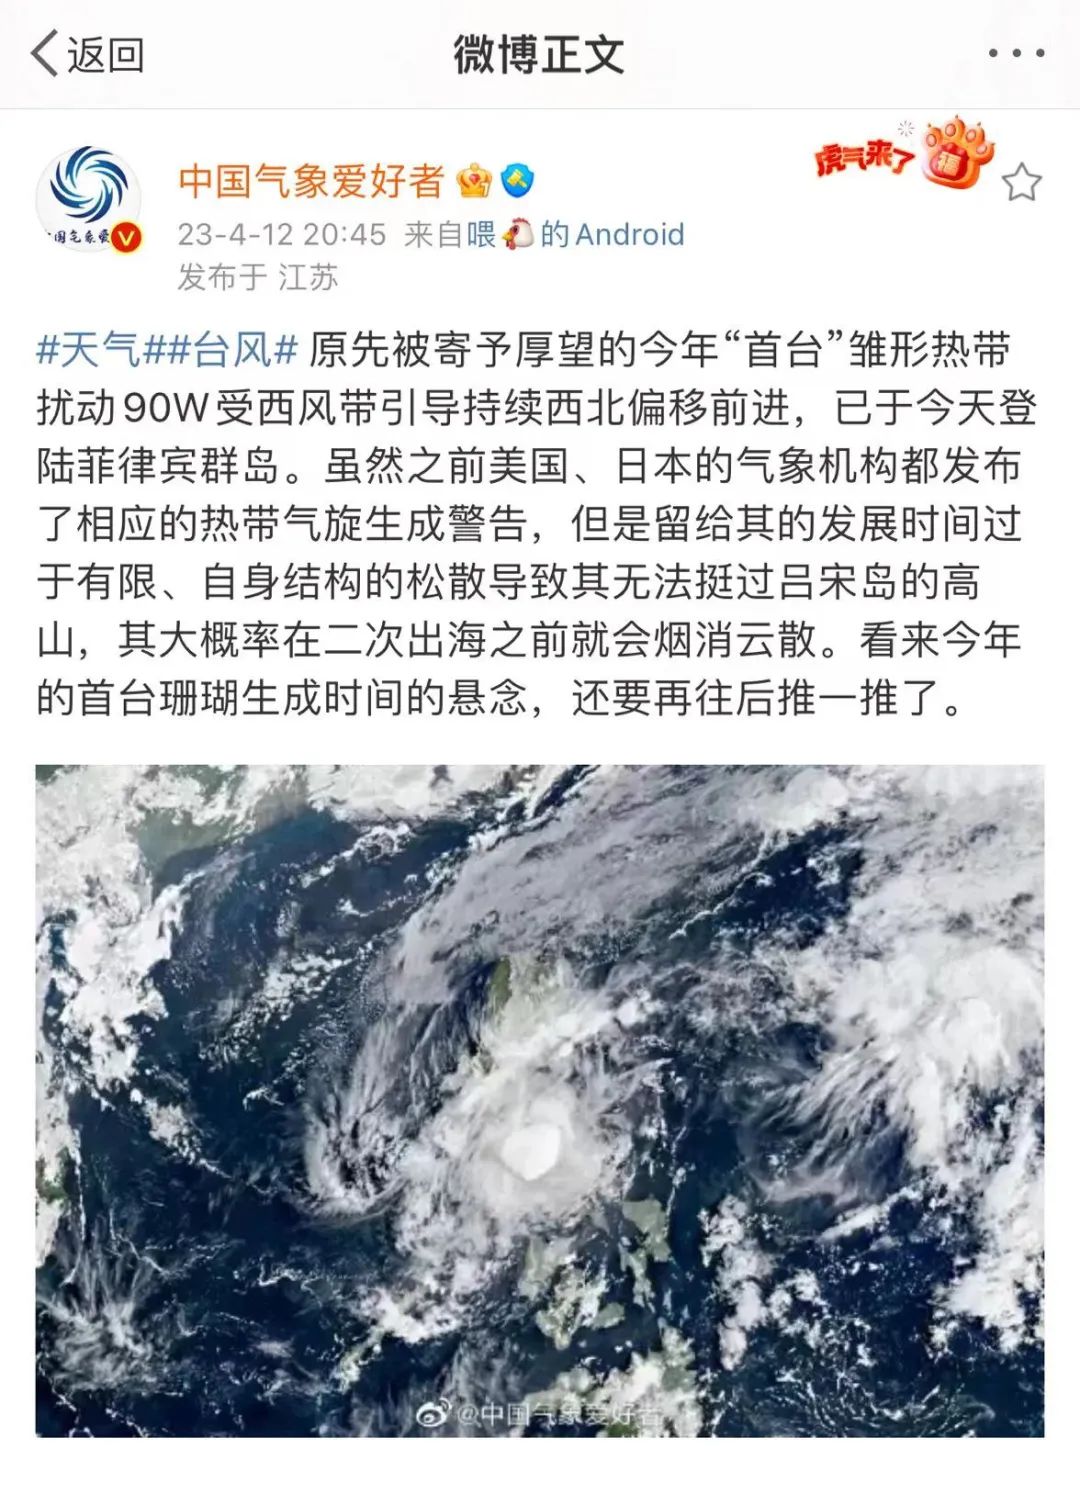 第10号台风“安比”登陆 上海台风和暴雨双警报 超过19万人已撤离并安置